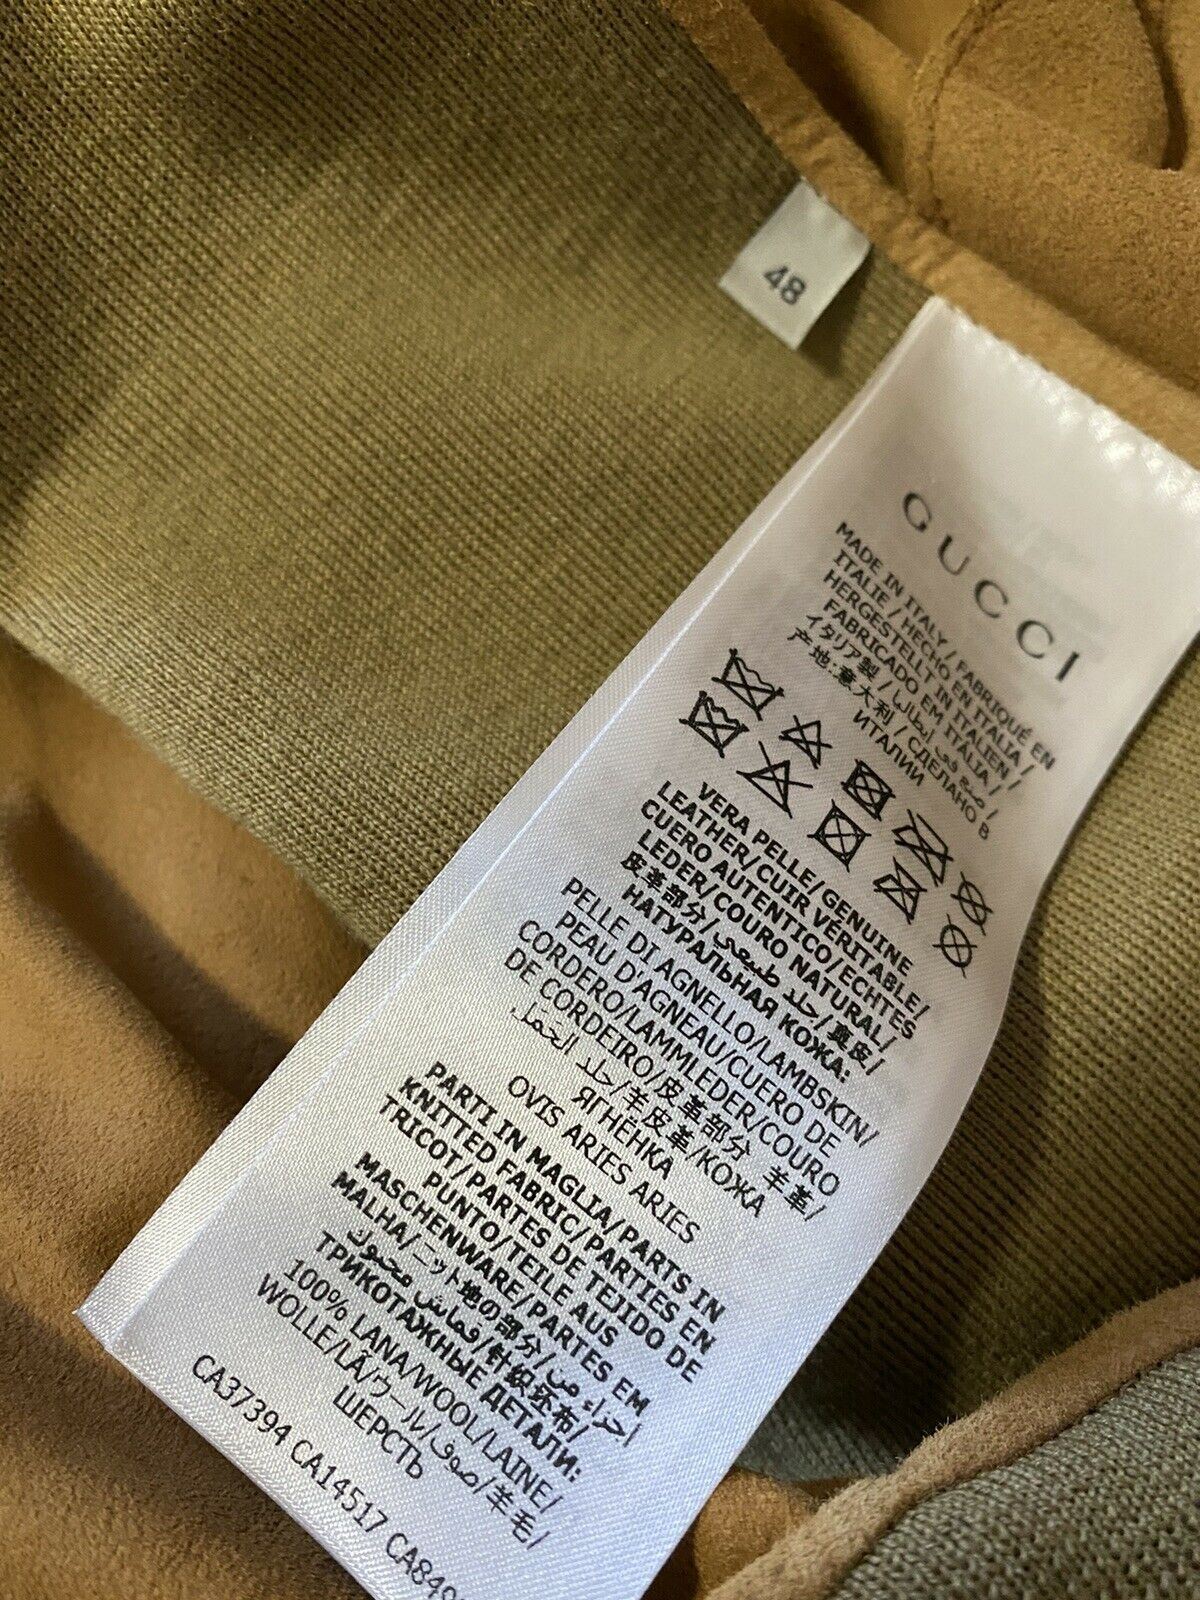 СЗТ $2800 Gucci Мужской замшево-шерстяной кардиган-свитер Коричневый/Каки M (48 EU) Италия